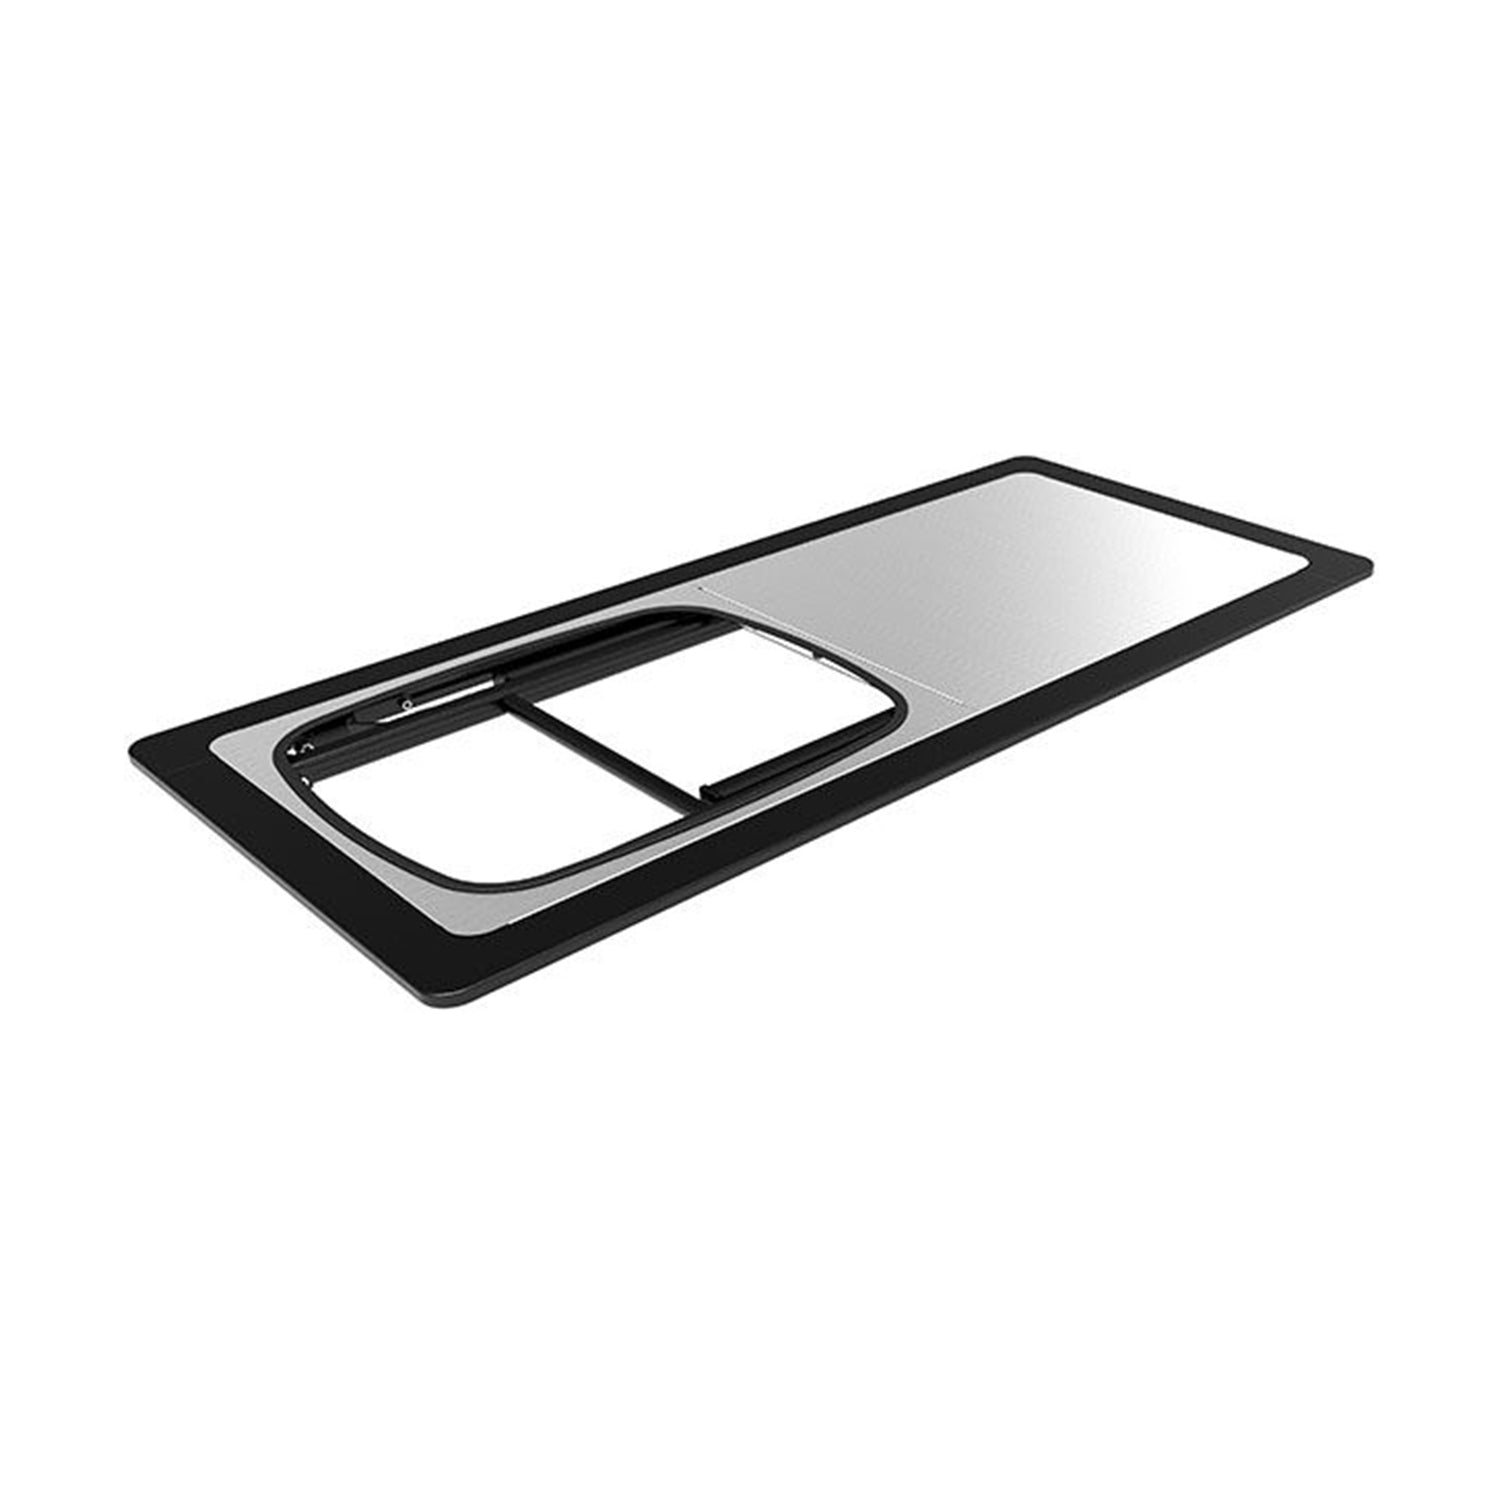 Front Runner Pro Stainless Steel Prep Table With Foldaway Basin / Pro Stainless Prep Table With Foldaway Basin 